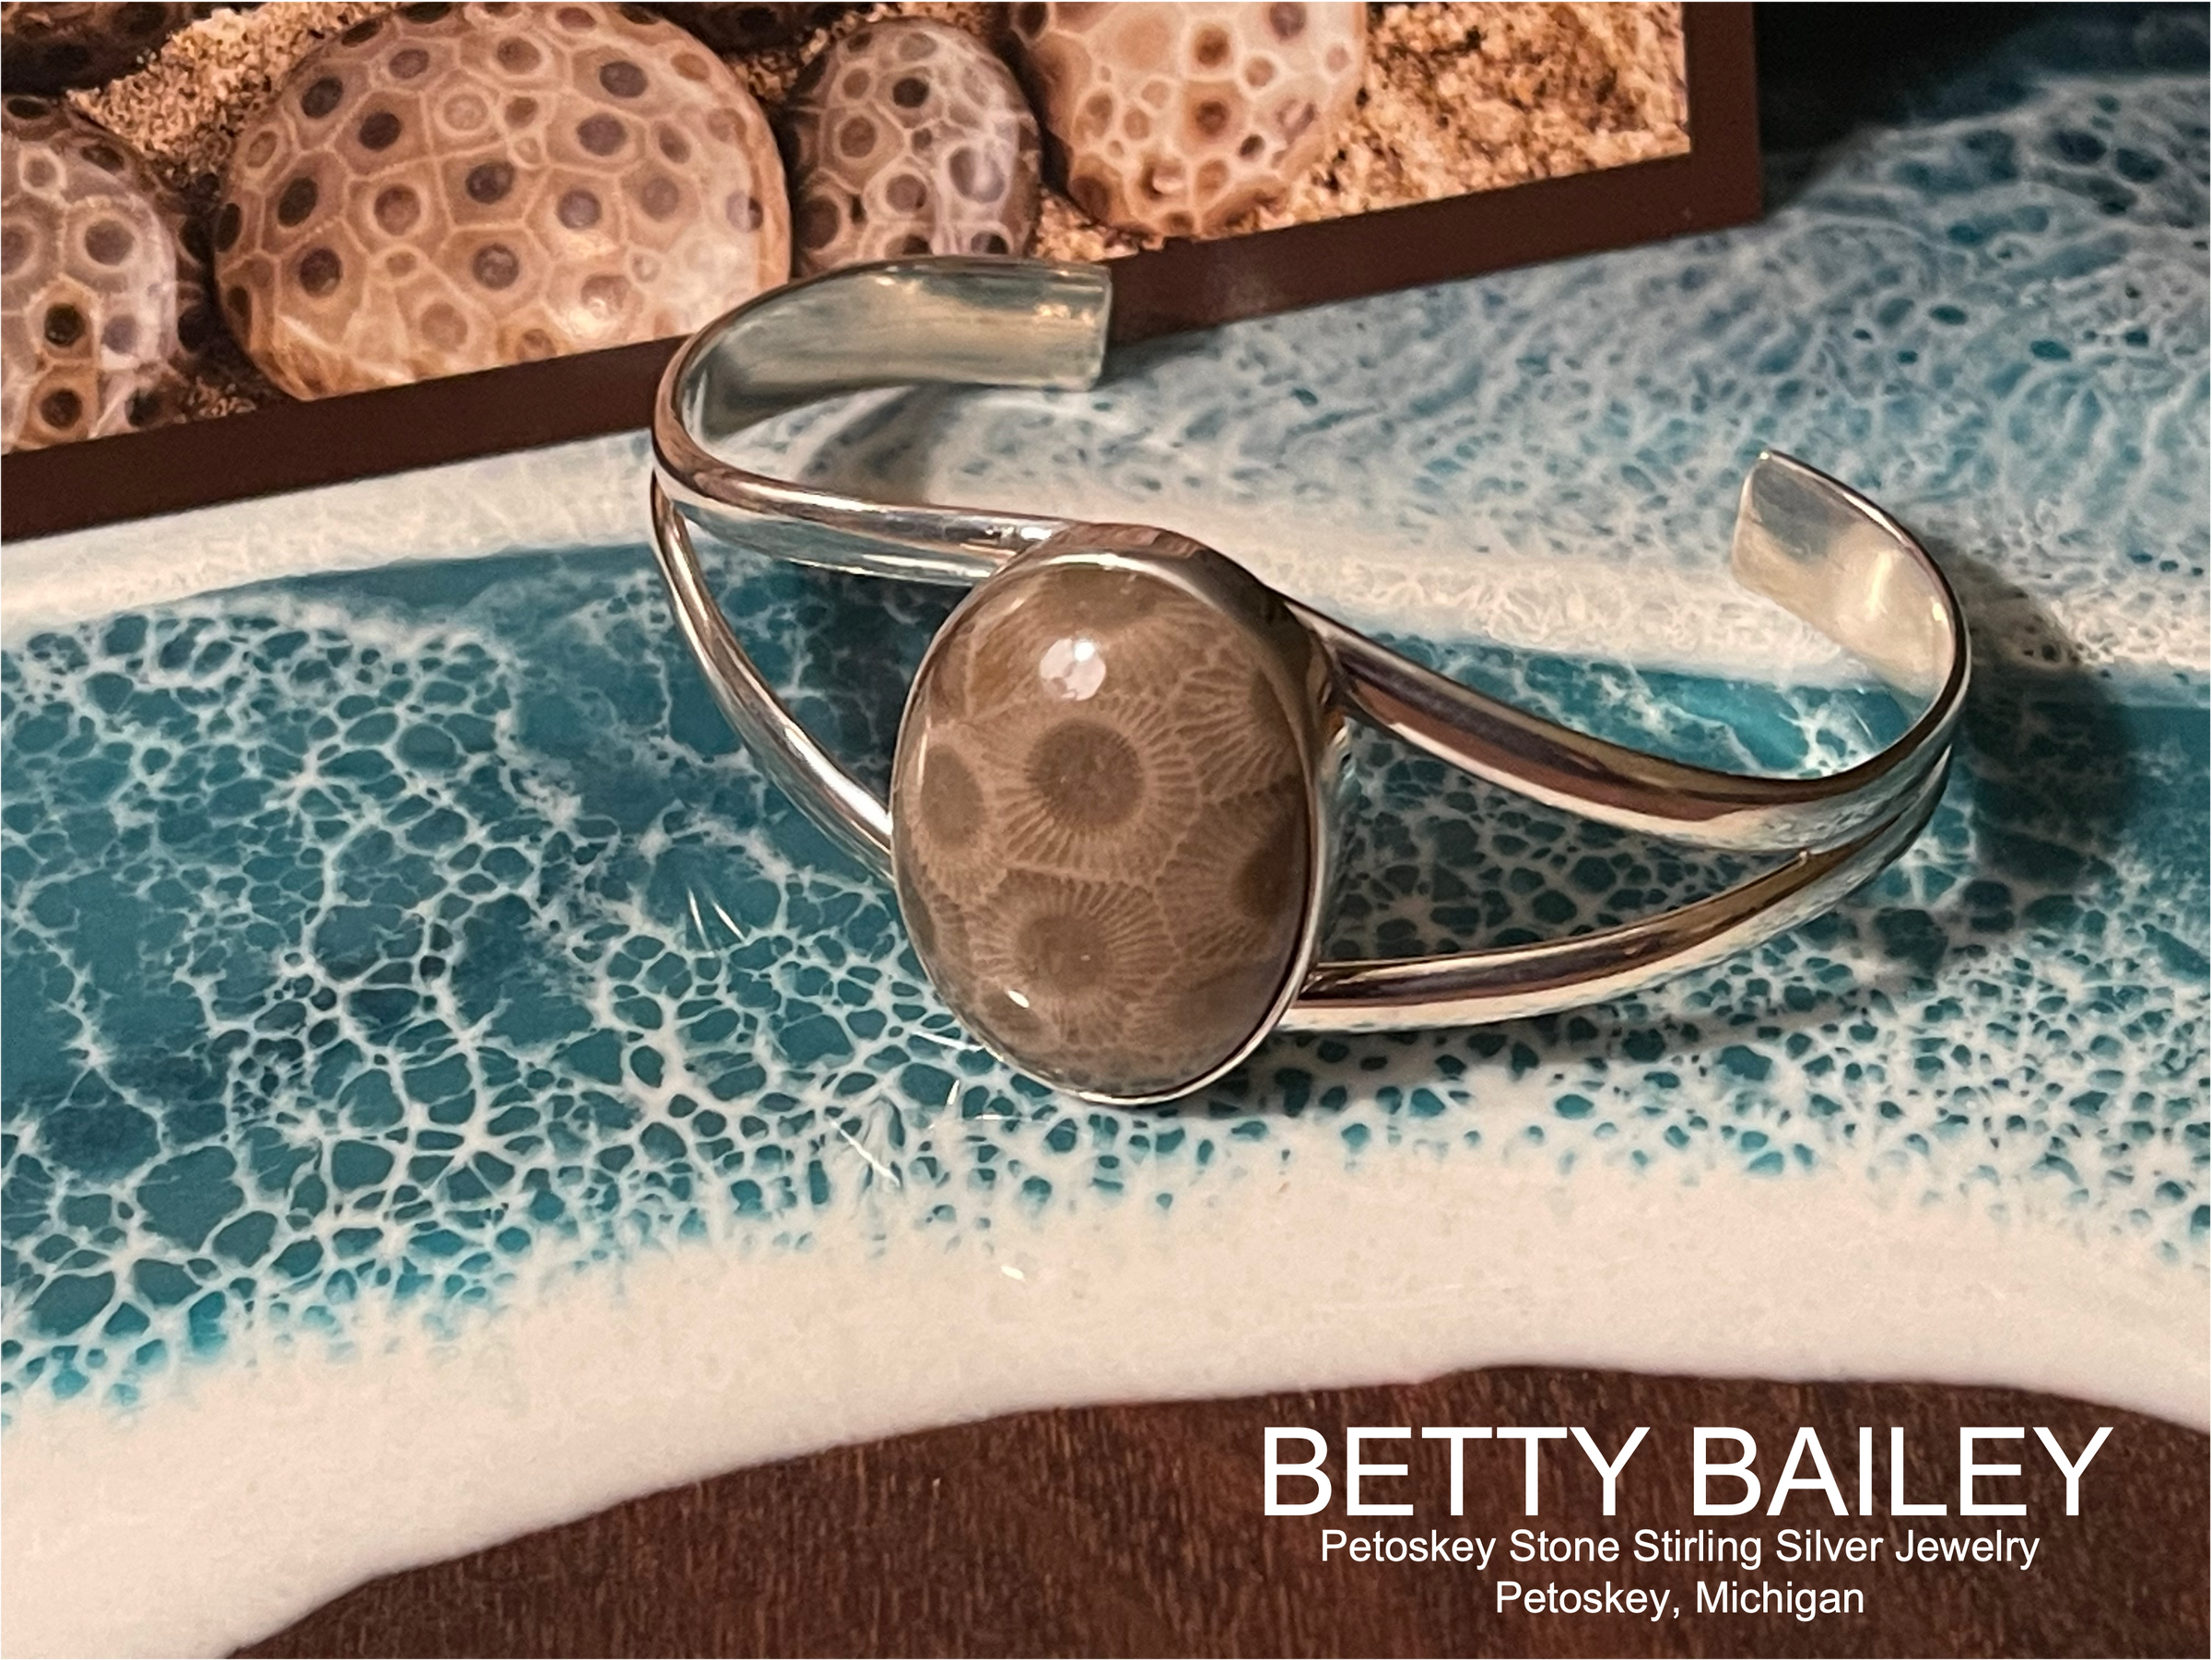 Betty Bailey Petoskey Stone Jewelry